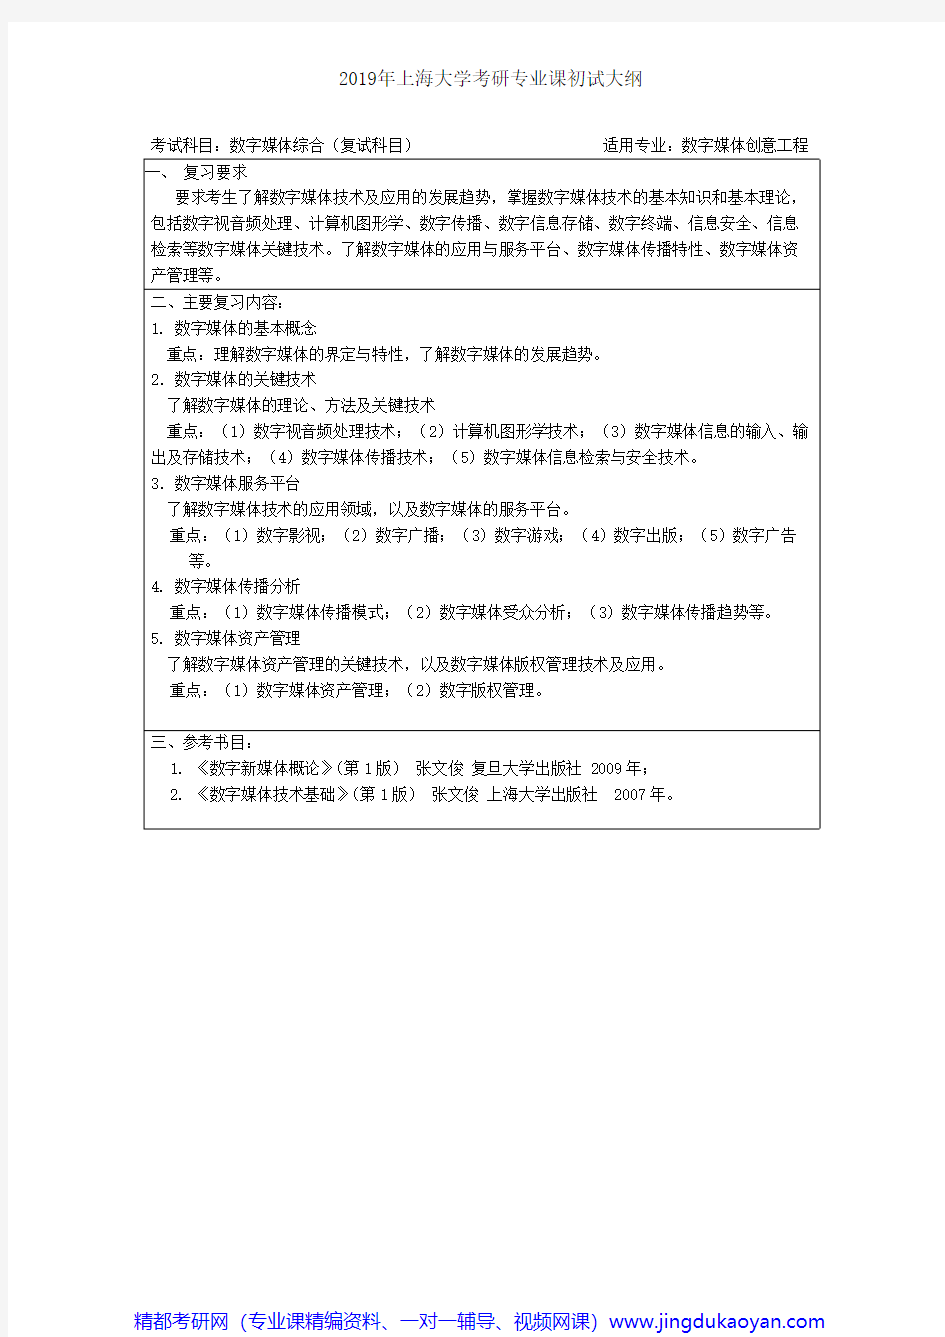 上海大学数字媒体综合(复试科目)2018年考研专业课大纲